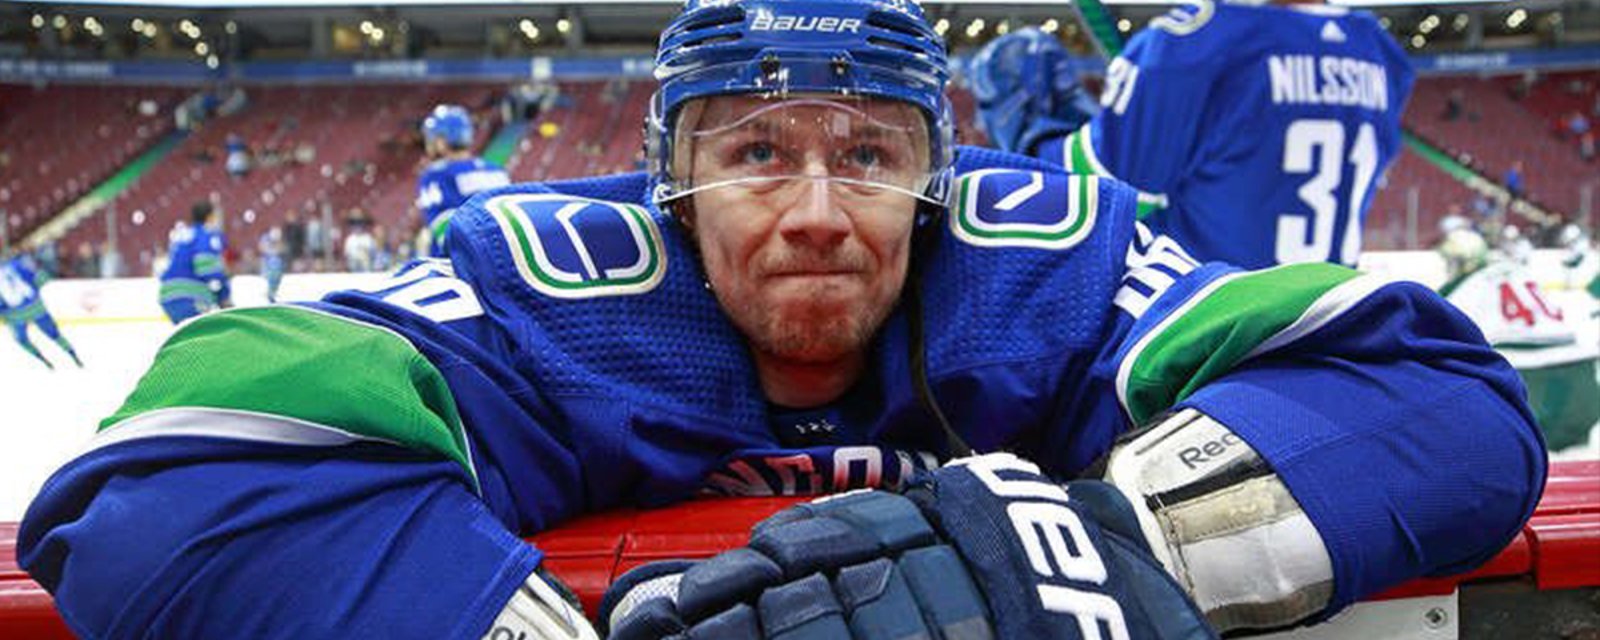 Breaking: Veteran NHLer Jokinen finally signs a new deal